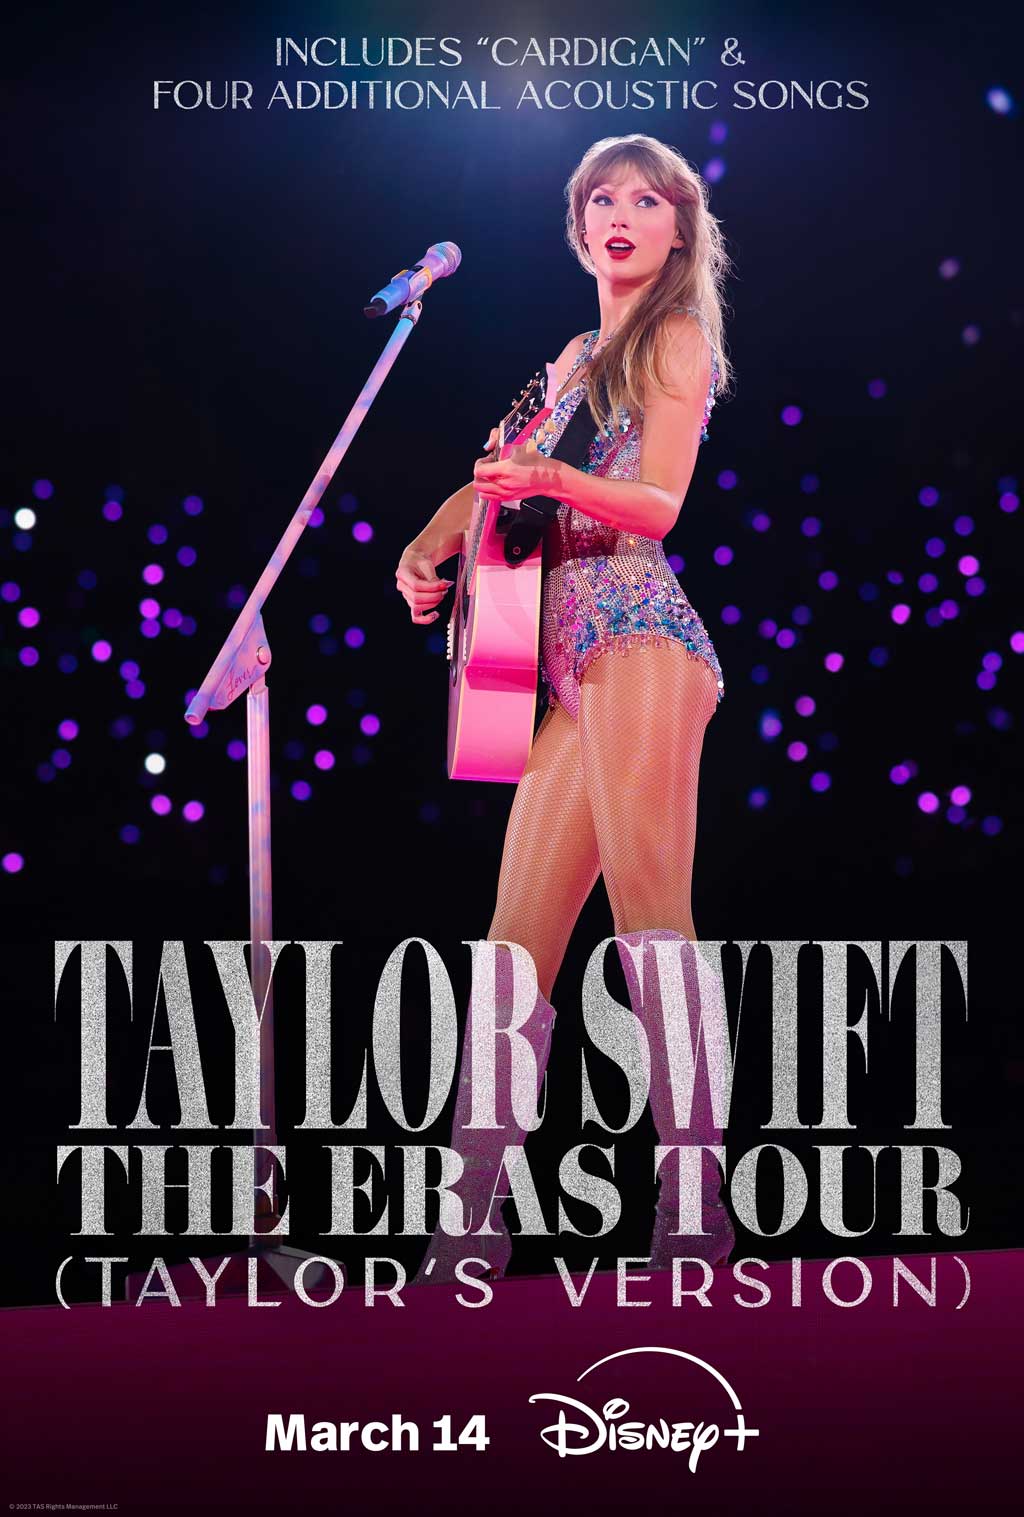 "Taylor Swift | The Eras Tour (Taylor's Version)"